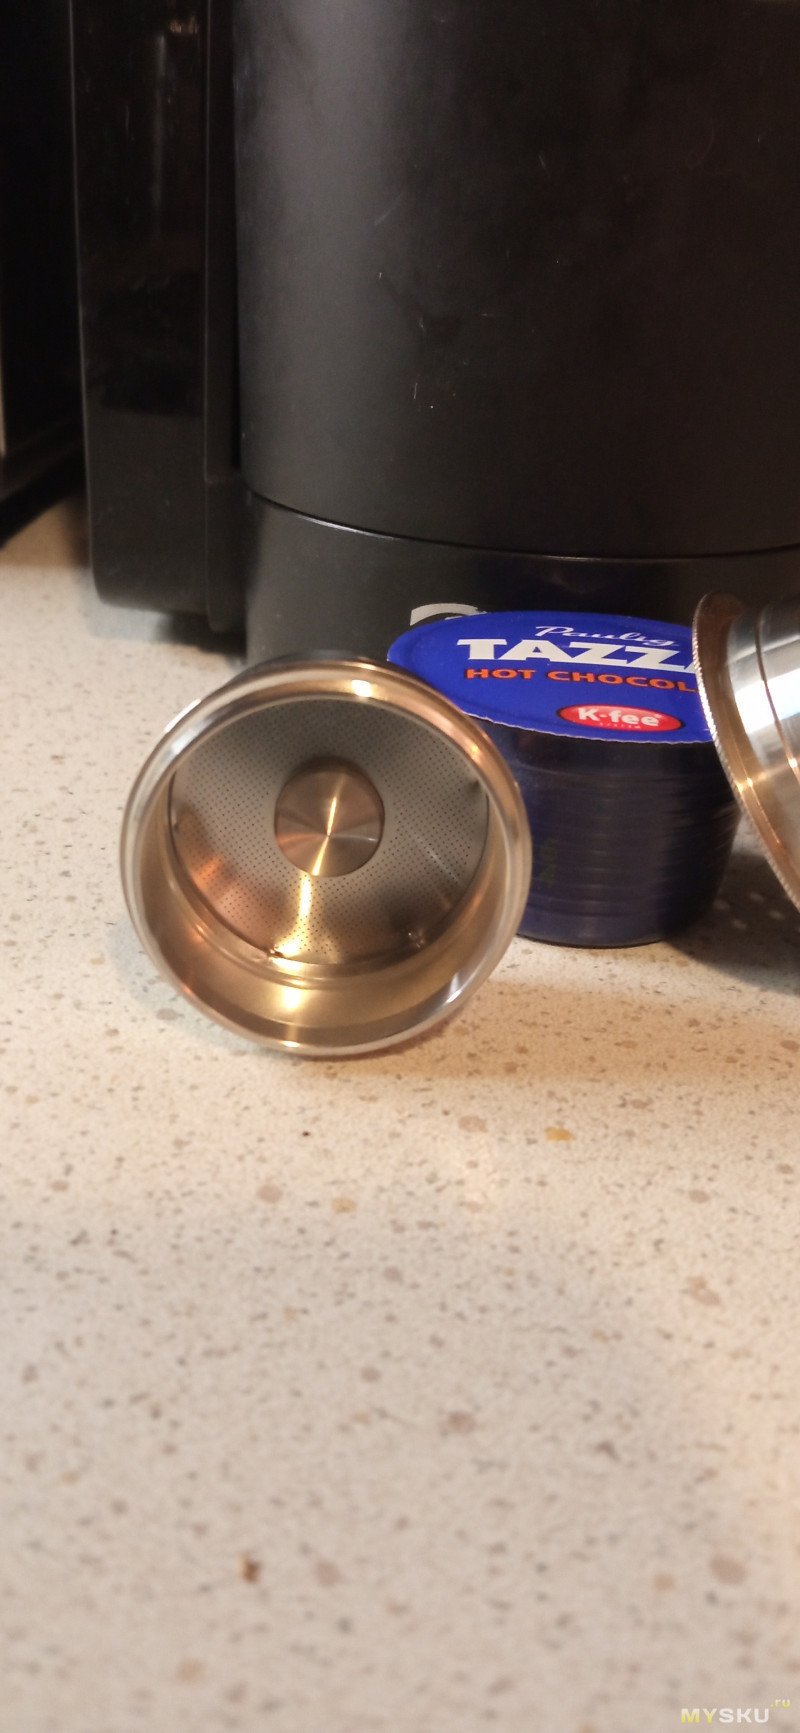 Многоразовая капсула из нержавеющей стали для кофе-машин (микрообзор)...